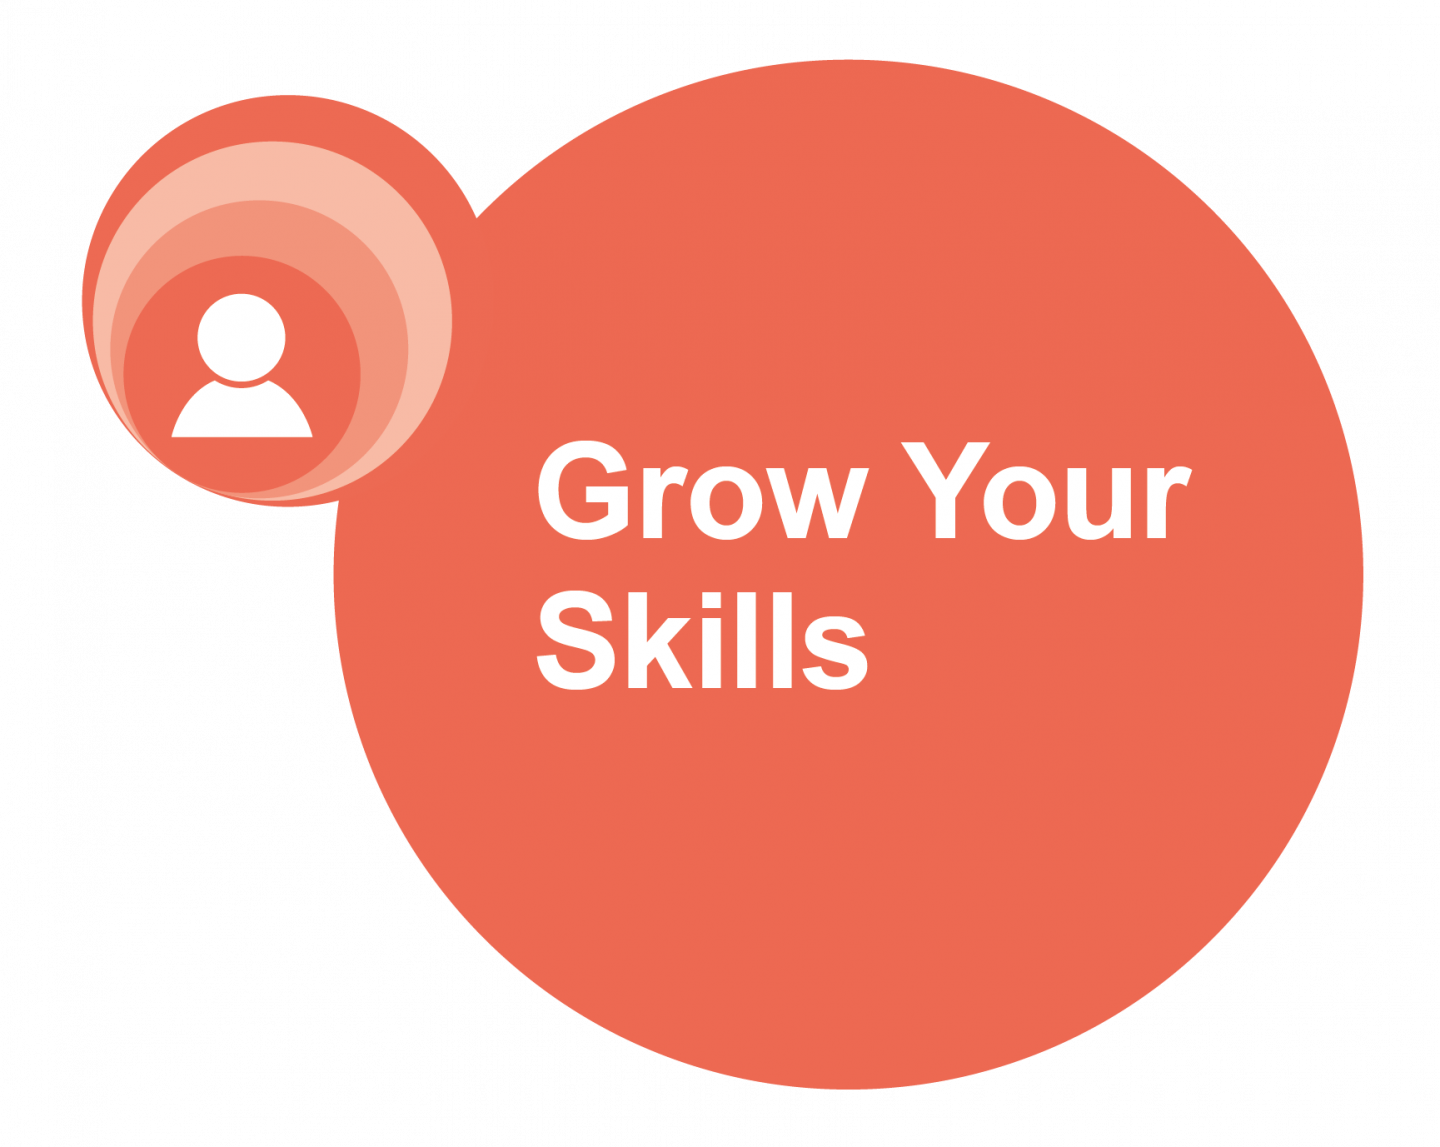 Grow your skills